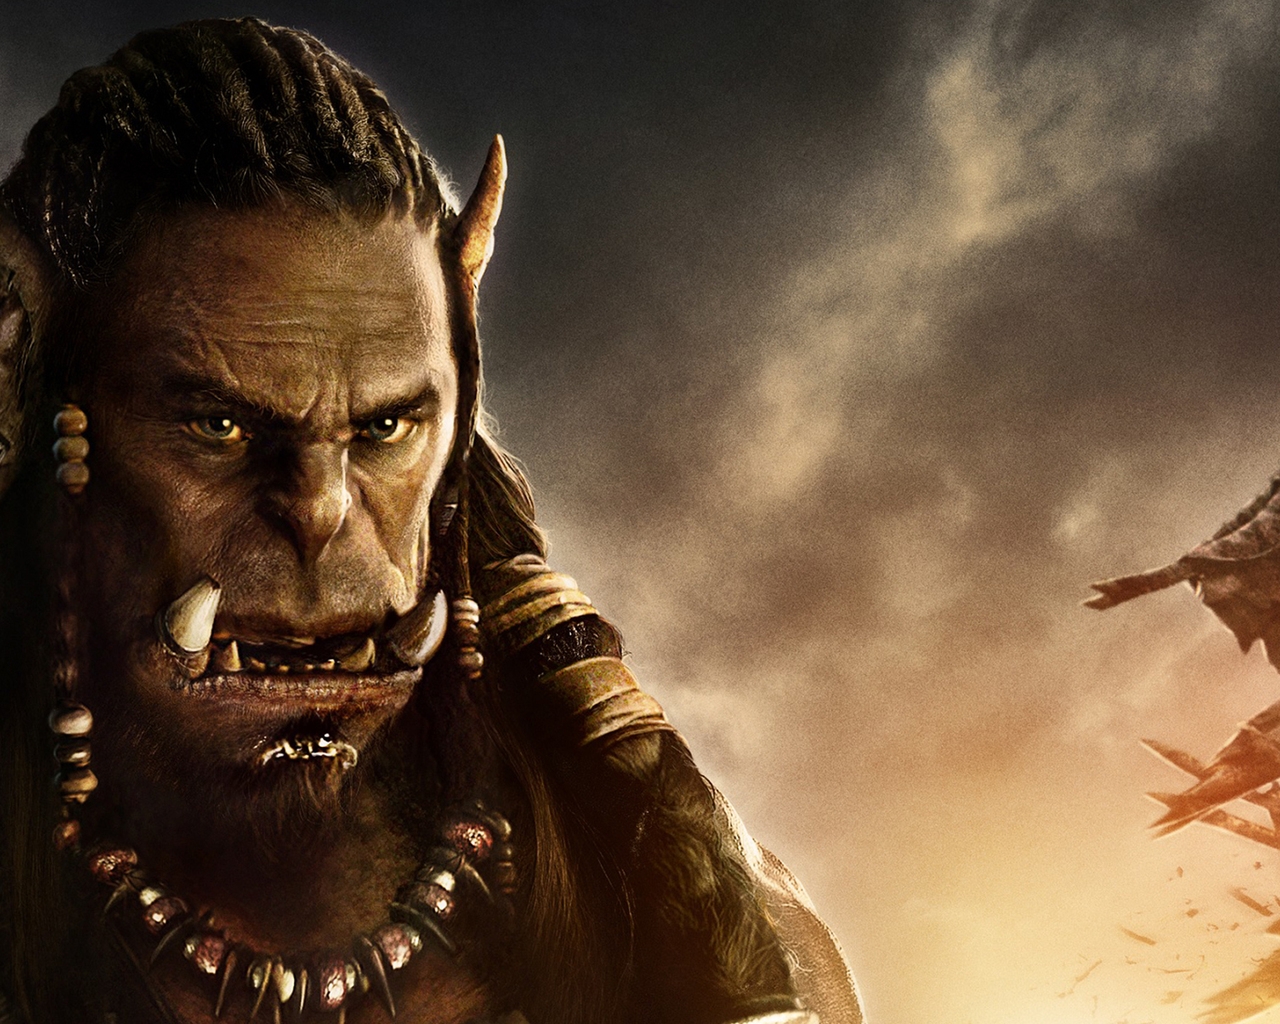 Warcraft Movie 2016 Durotan for 1280 x 1024 resolution